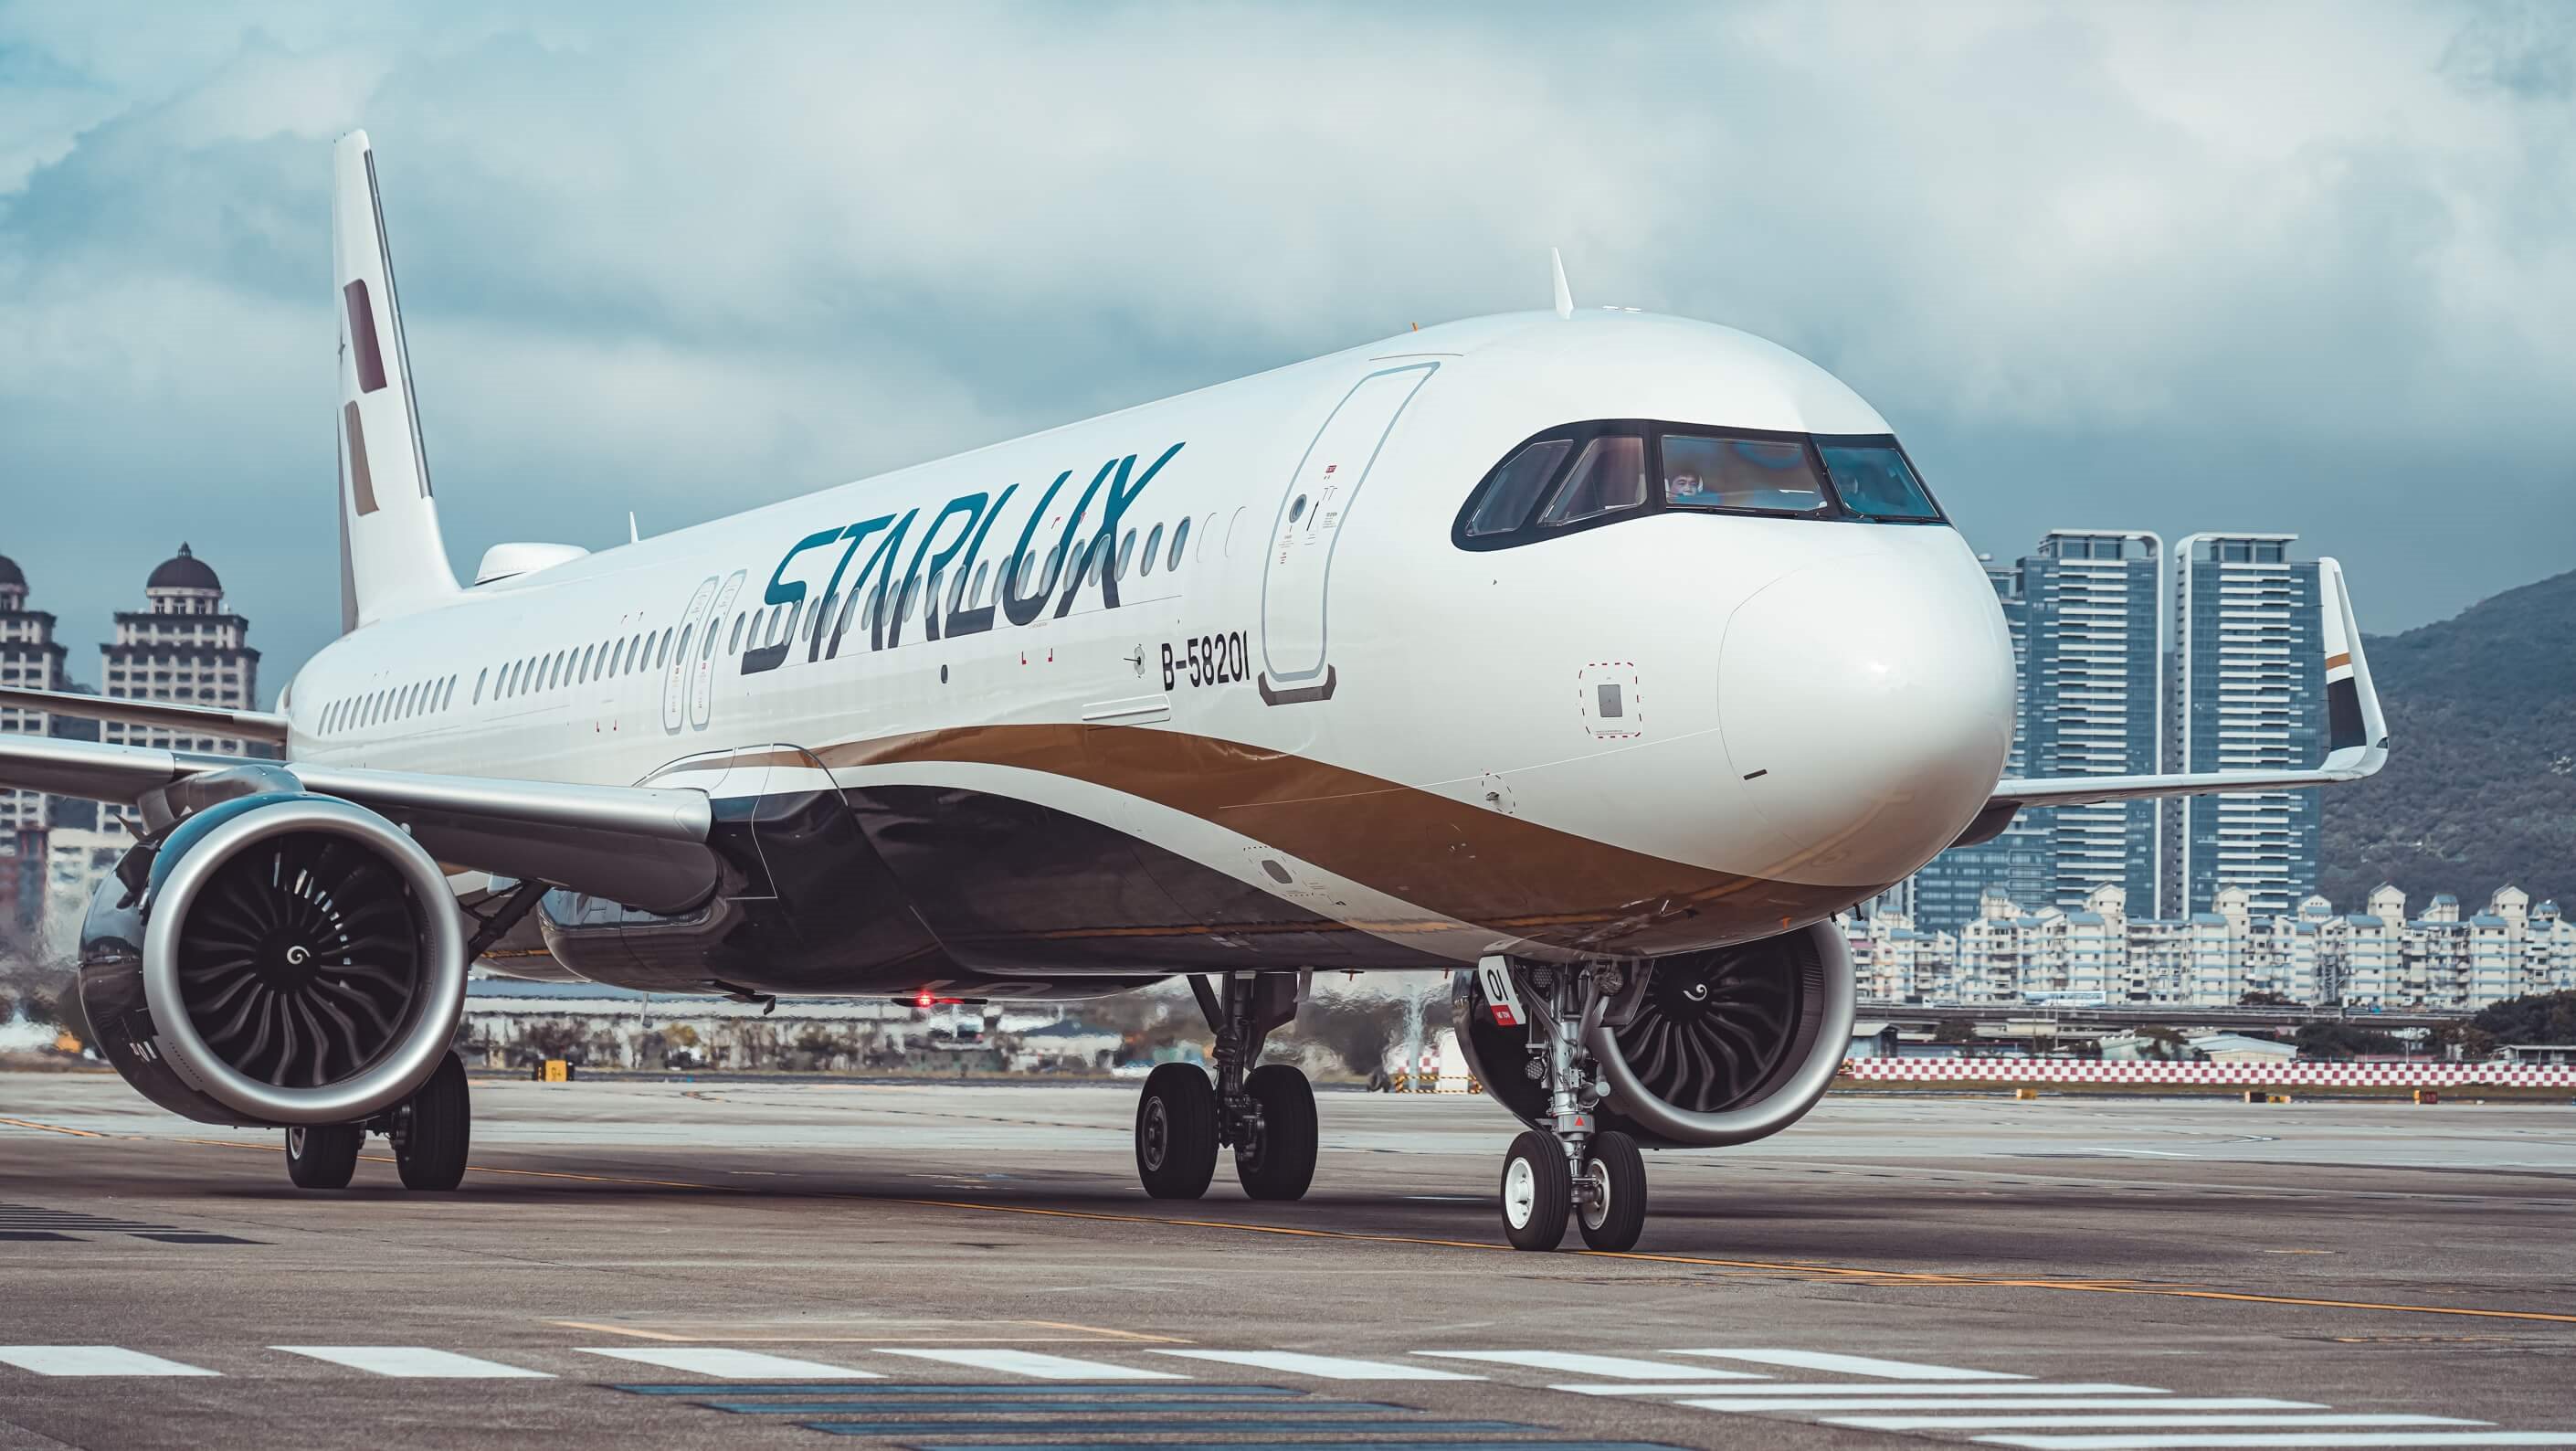 Hãng hàng không Starlux Airlines khai trương đường bay Đài Bắc- Đà Nẵng - Đài Bắc từ ngày 23/01/2020